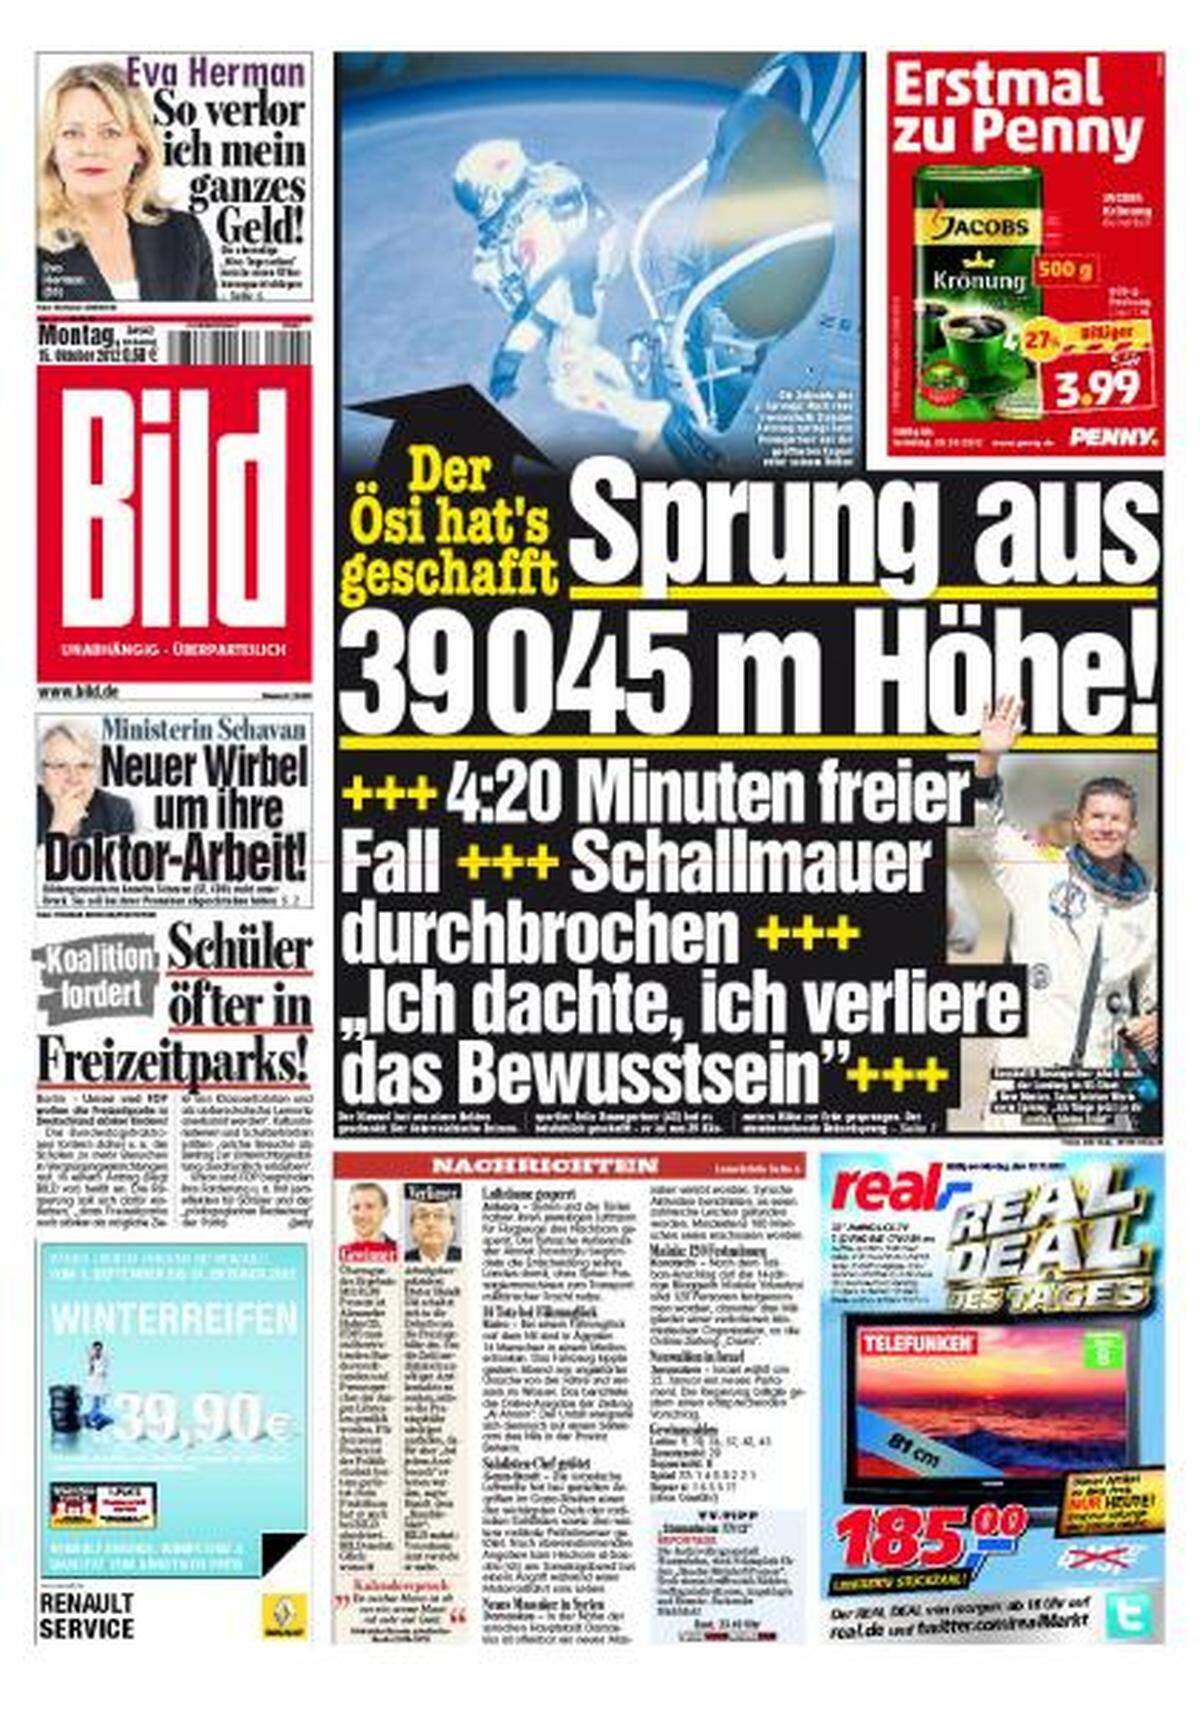 Die deutsche "Bild"-Zeitung freut sich: "Der Ösi hat's geschafft."